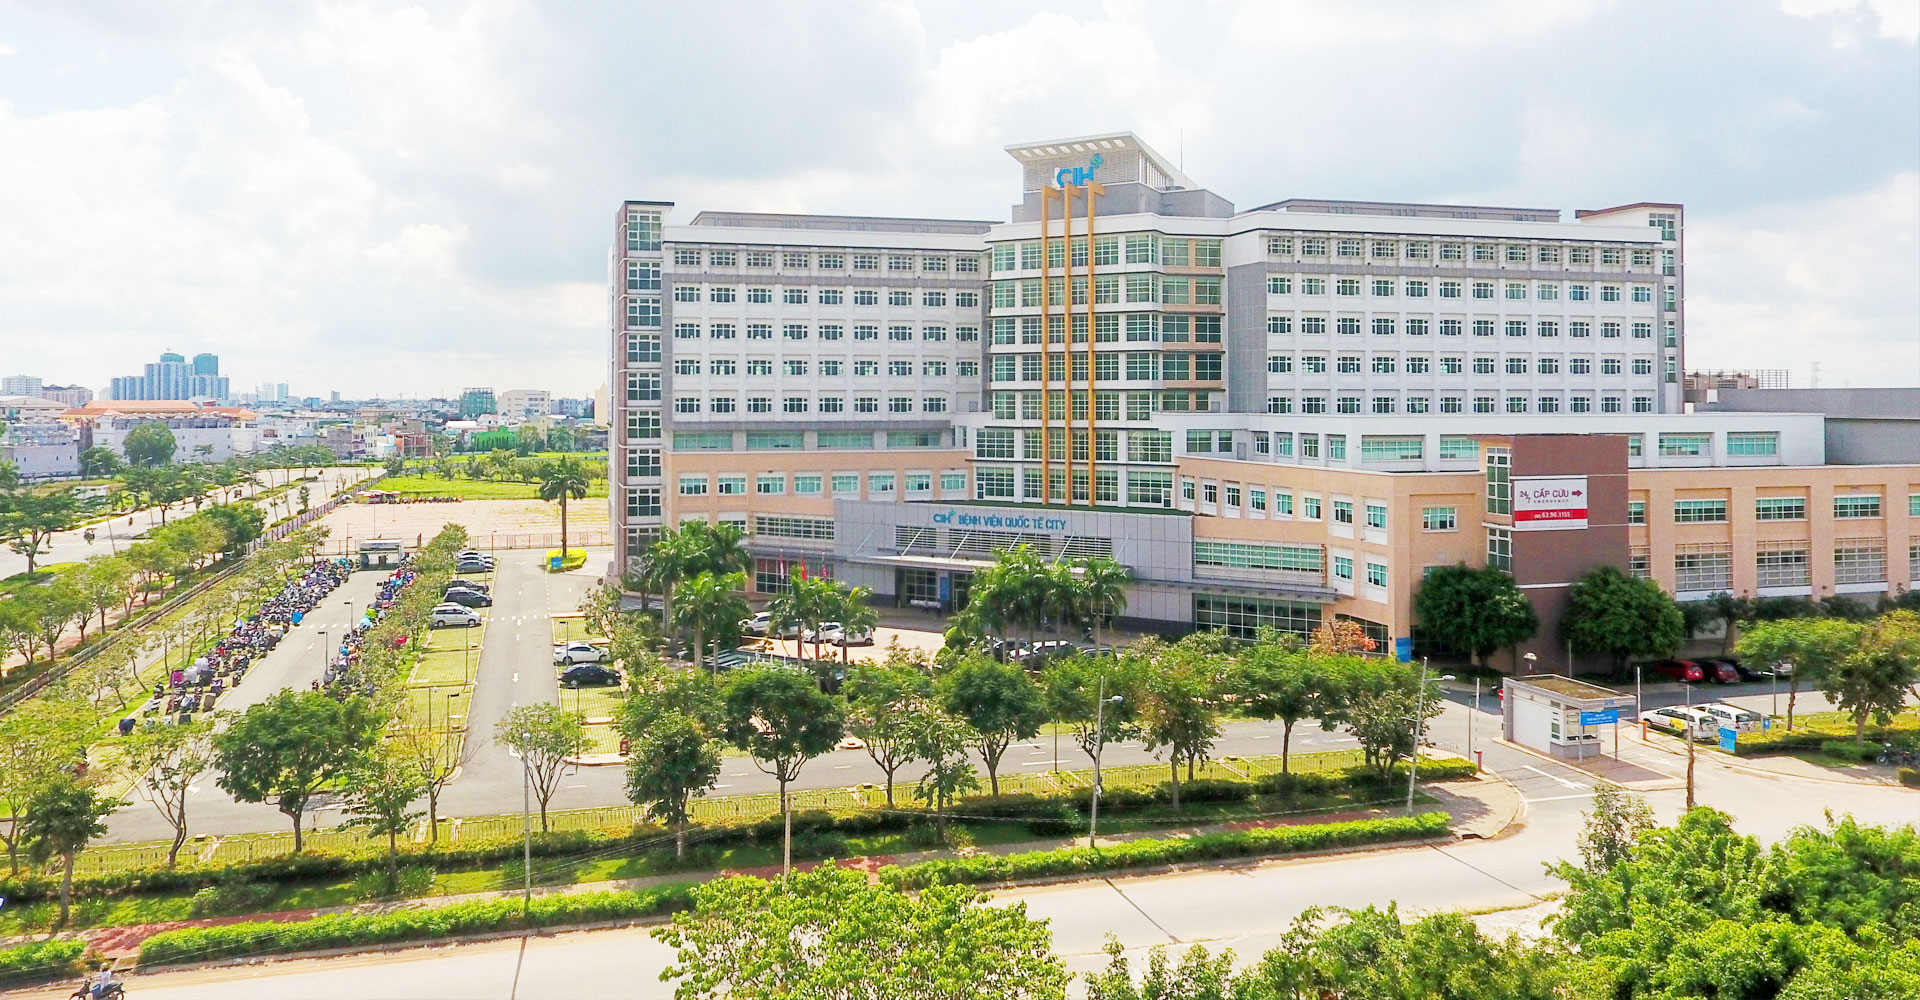 Bệnh viện quốc tế City gần dự án Moonlight Boulevard quận Bình Tân của tập đoàn Hưng Thịnh